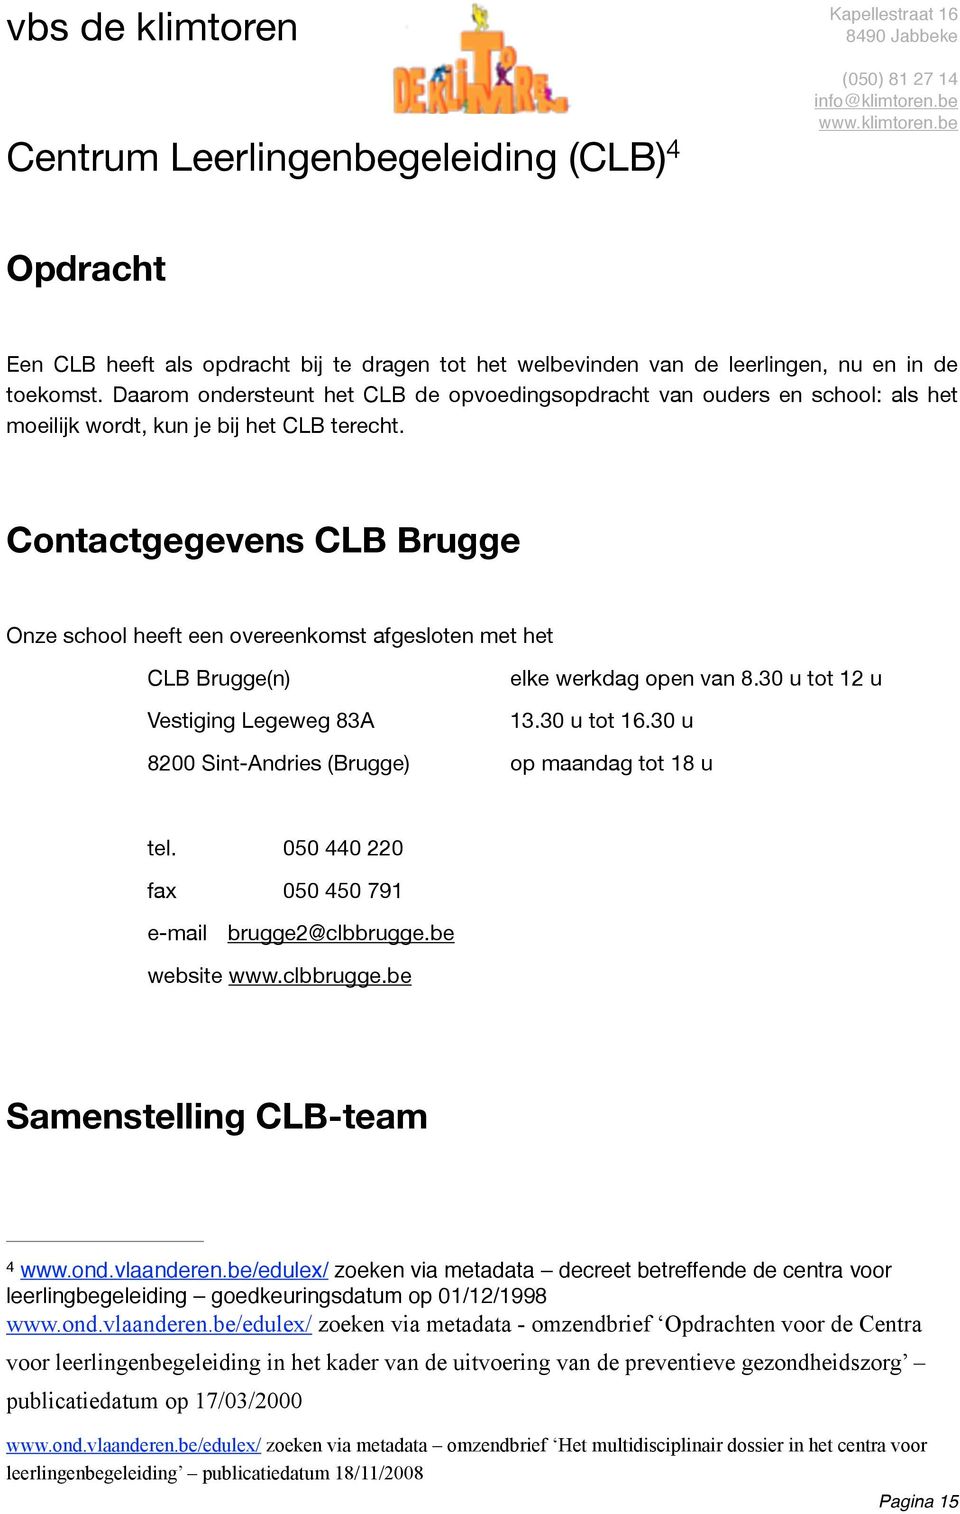 Contactgegevens CLB Brugge Onze school heeft een overeenkomst afgesloten met het CLB Brugge(n) Vestiging Legeweg 83A elke werkdag open van 8.30 u tot 12 u 13.30 u tot 16.